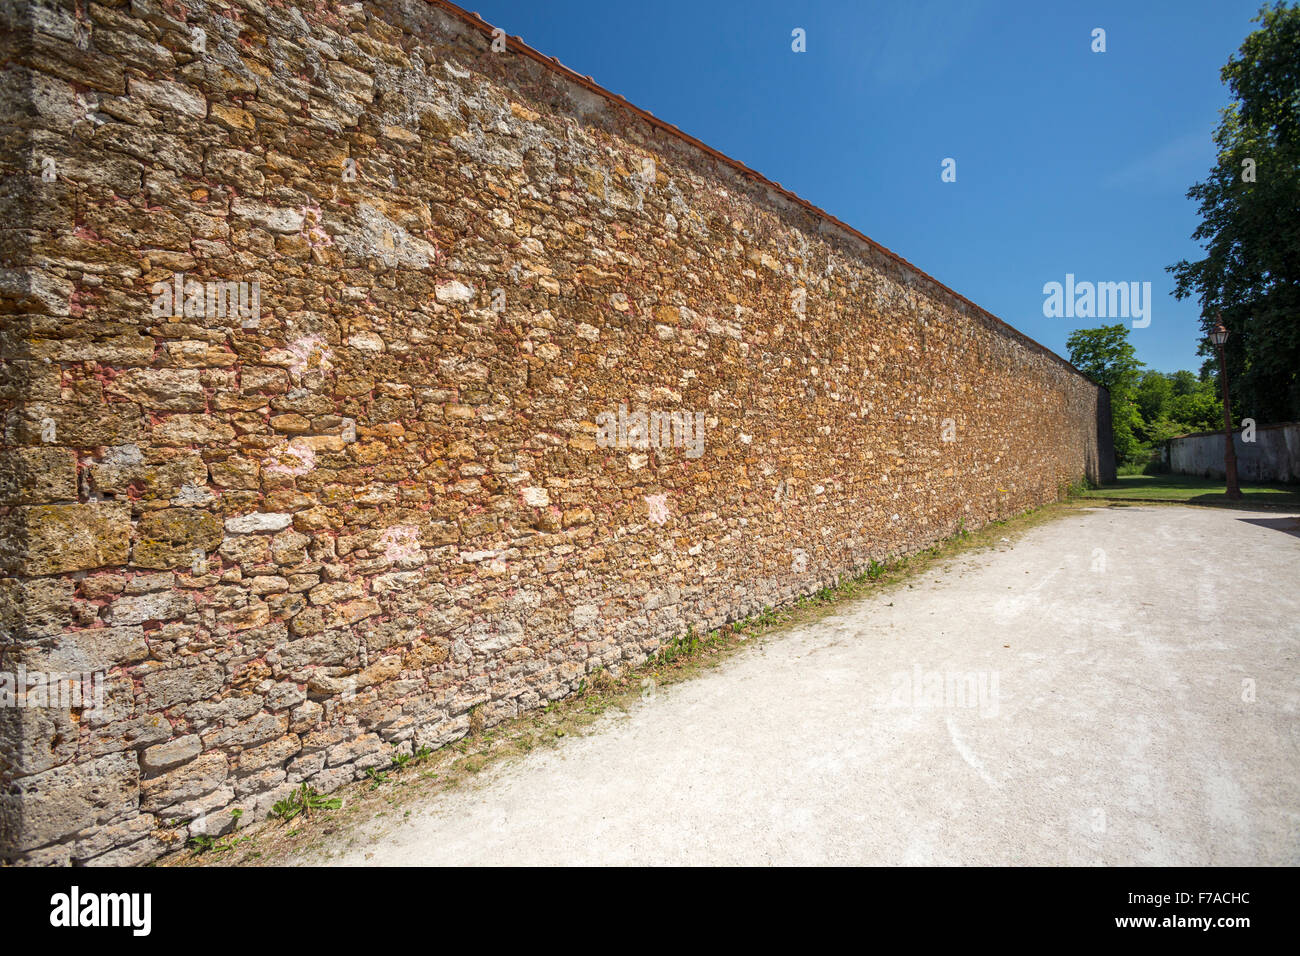 Die Gritstone Außenwände des alten Gefängnisses Coulommiers (Frankreich). Mur de Pierre Meulière de l ' ancienne prison de Coulommiers. Stockfoto